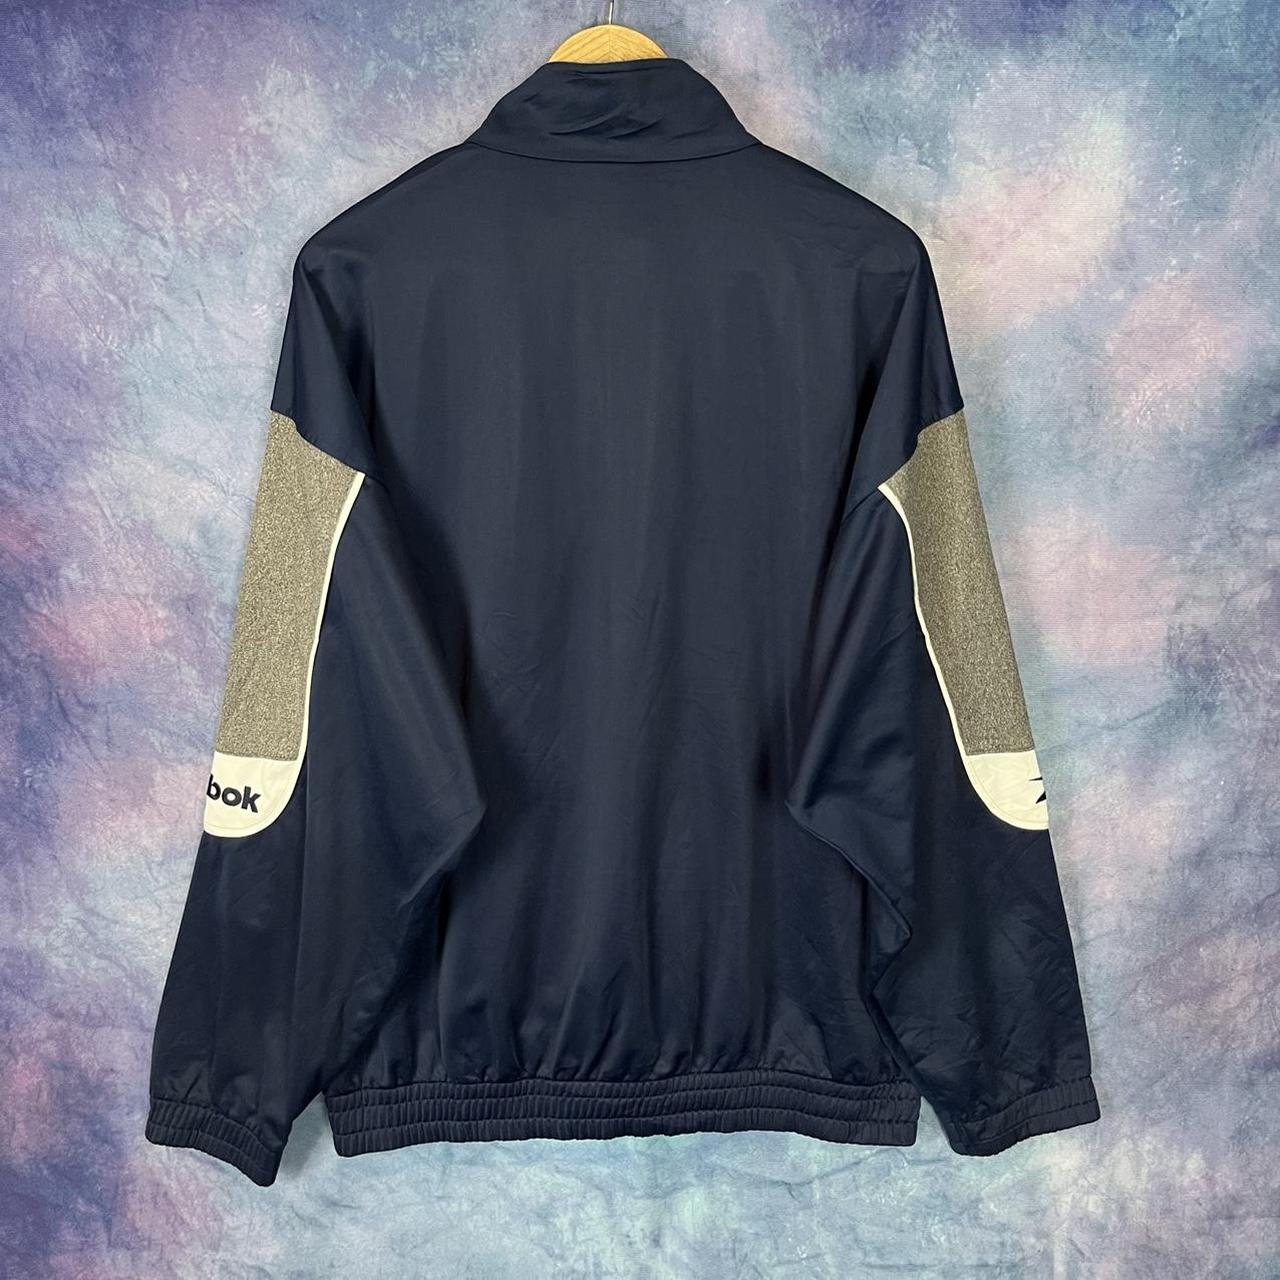 Vintage Reebok track jacket large mens Embroidered... - Depop